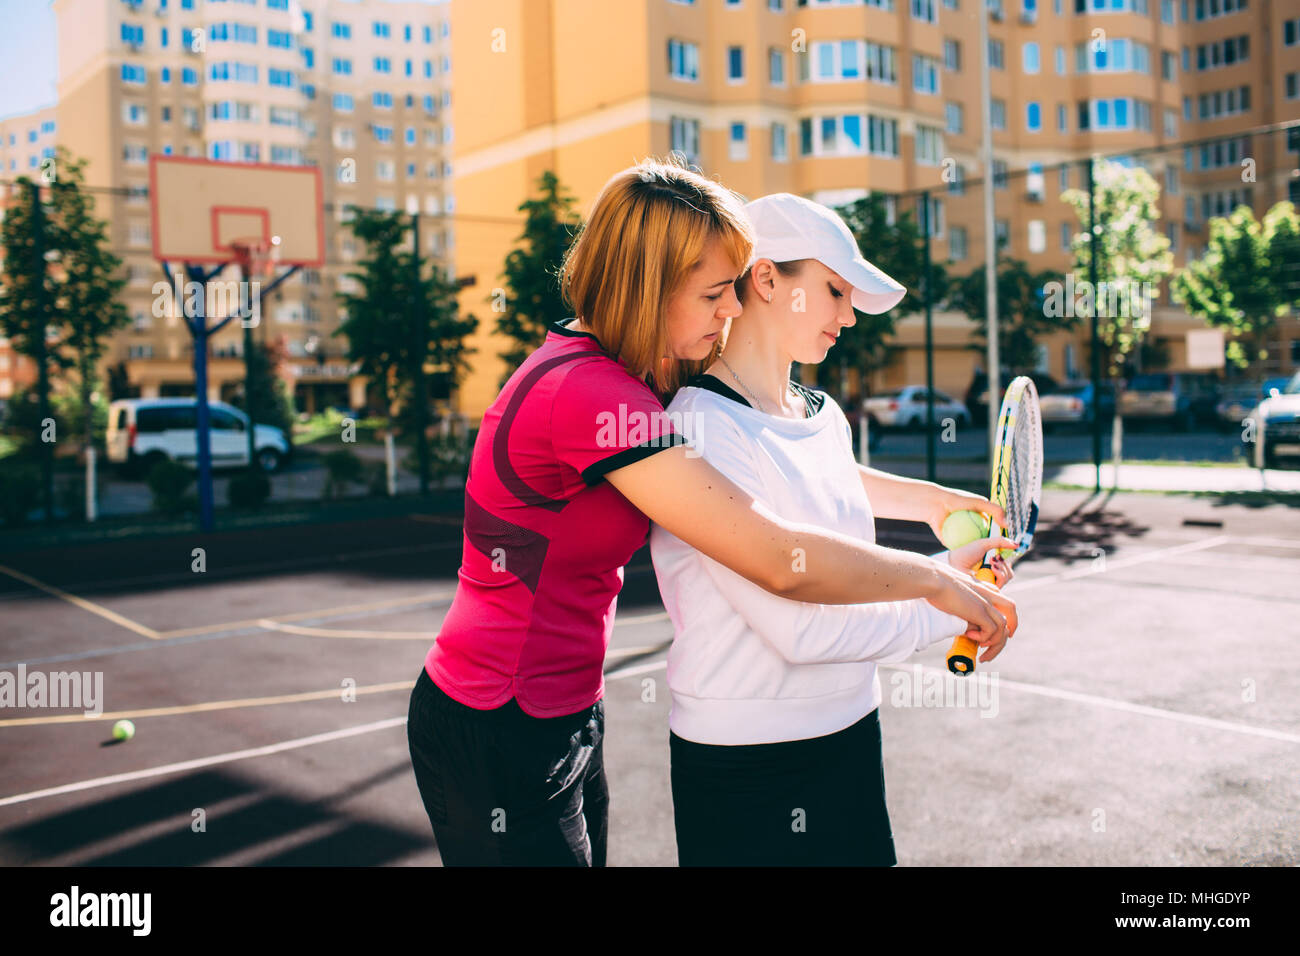 lezione di tennis. insegnare a giocare a tennis a una giovane donna, mentre si trova sul campo da tennis della città in una giornata di sole Foto Stock